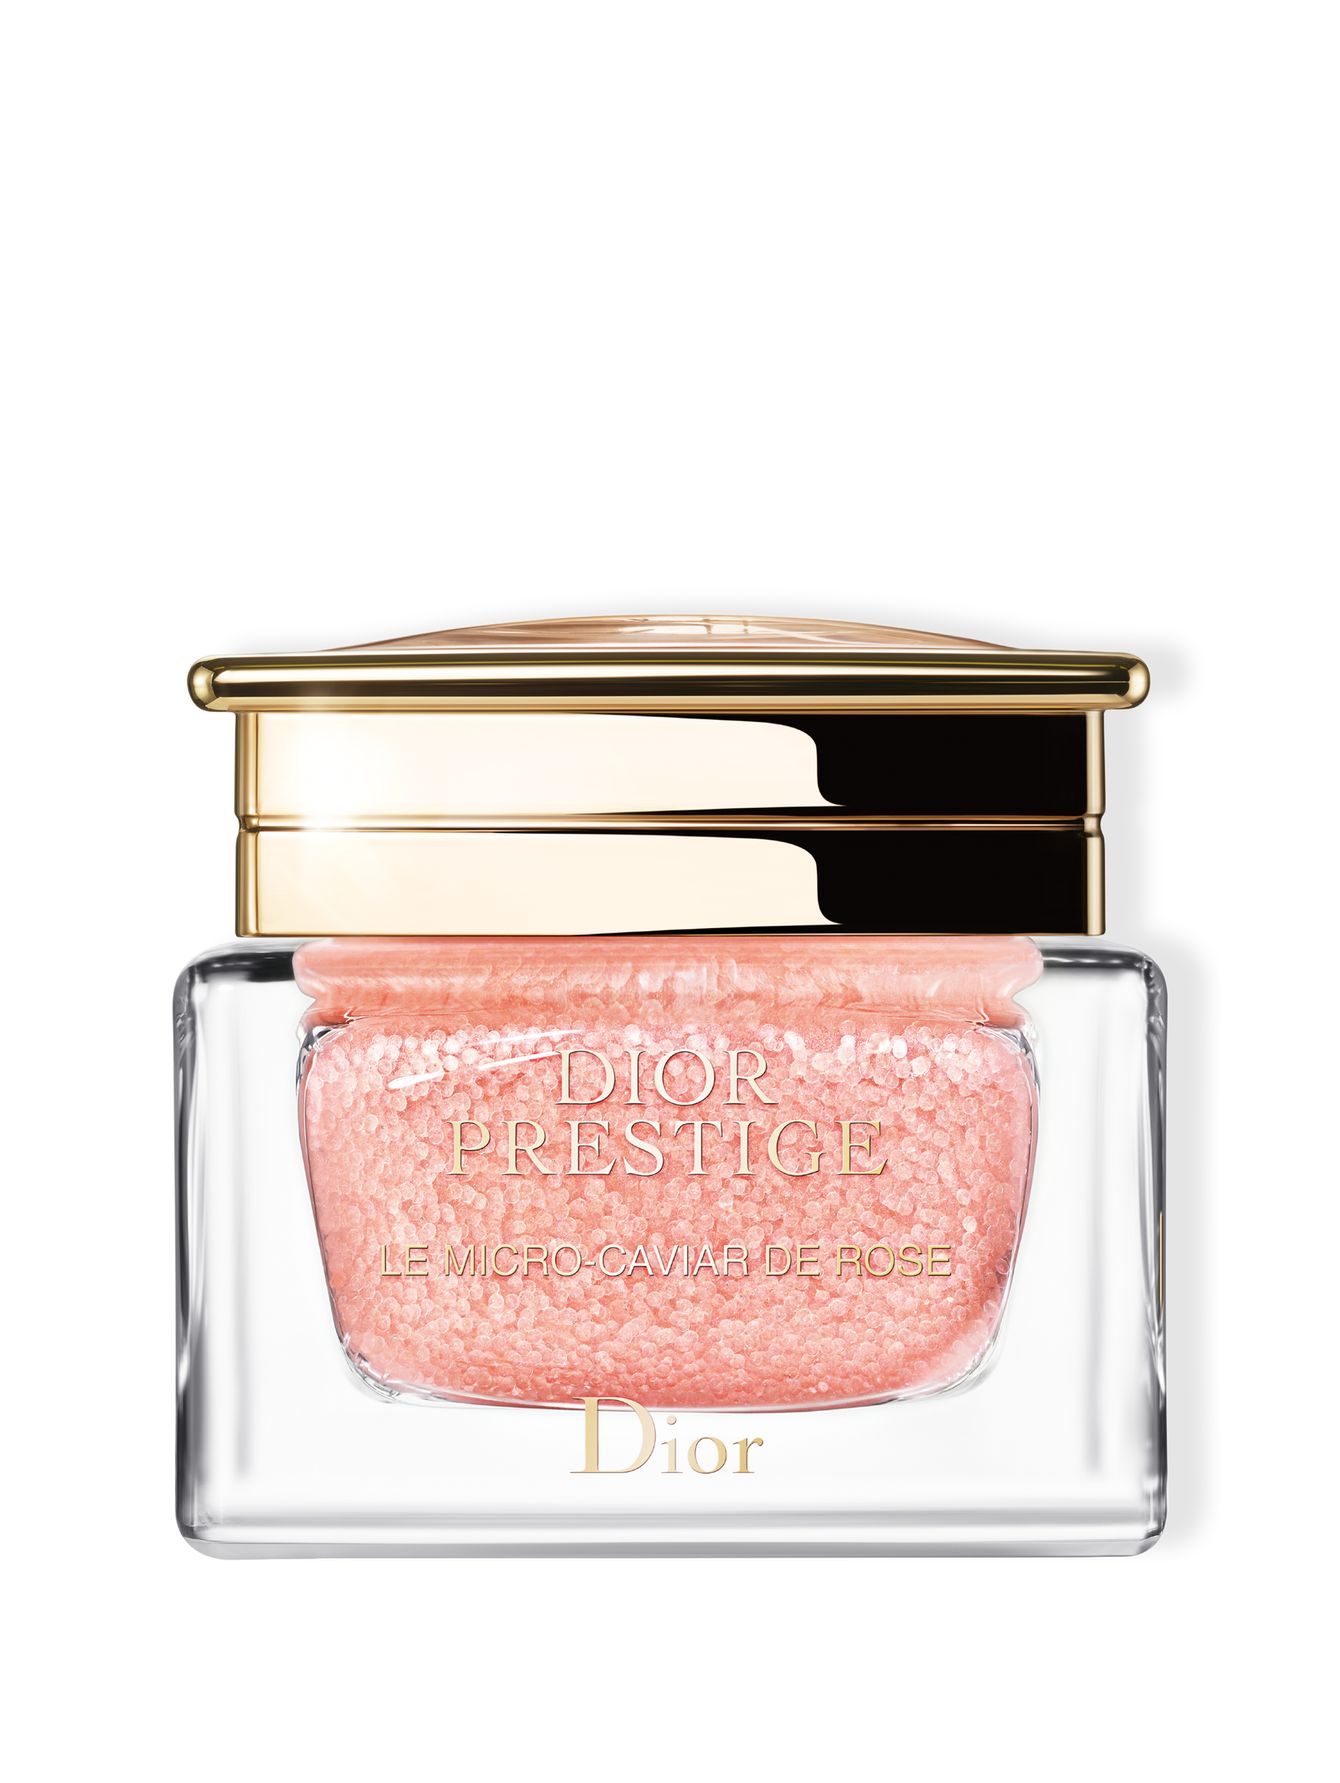 Концентрат для лица Dior Prestige Le Micro-Caviar de Rose, 75 мл - Общий вид